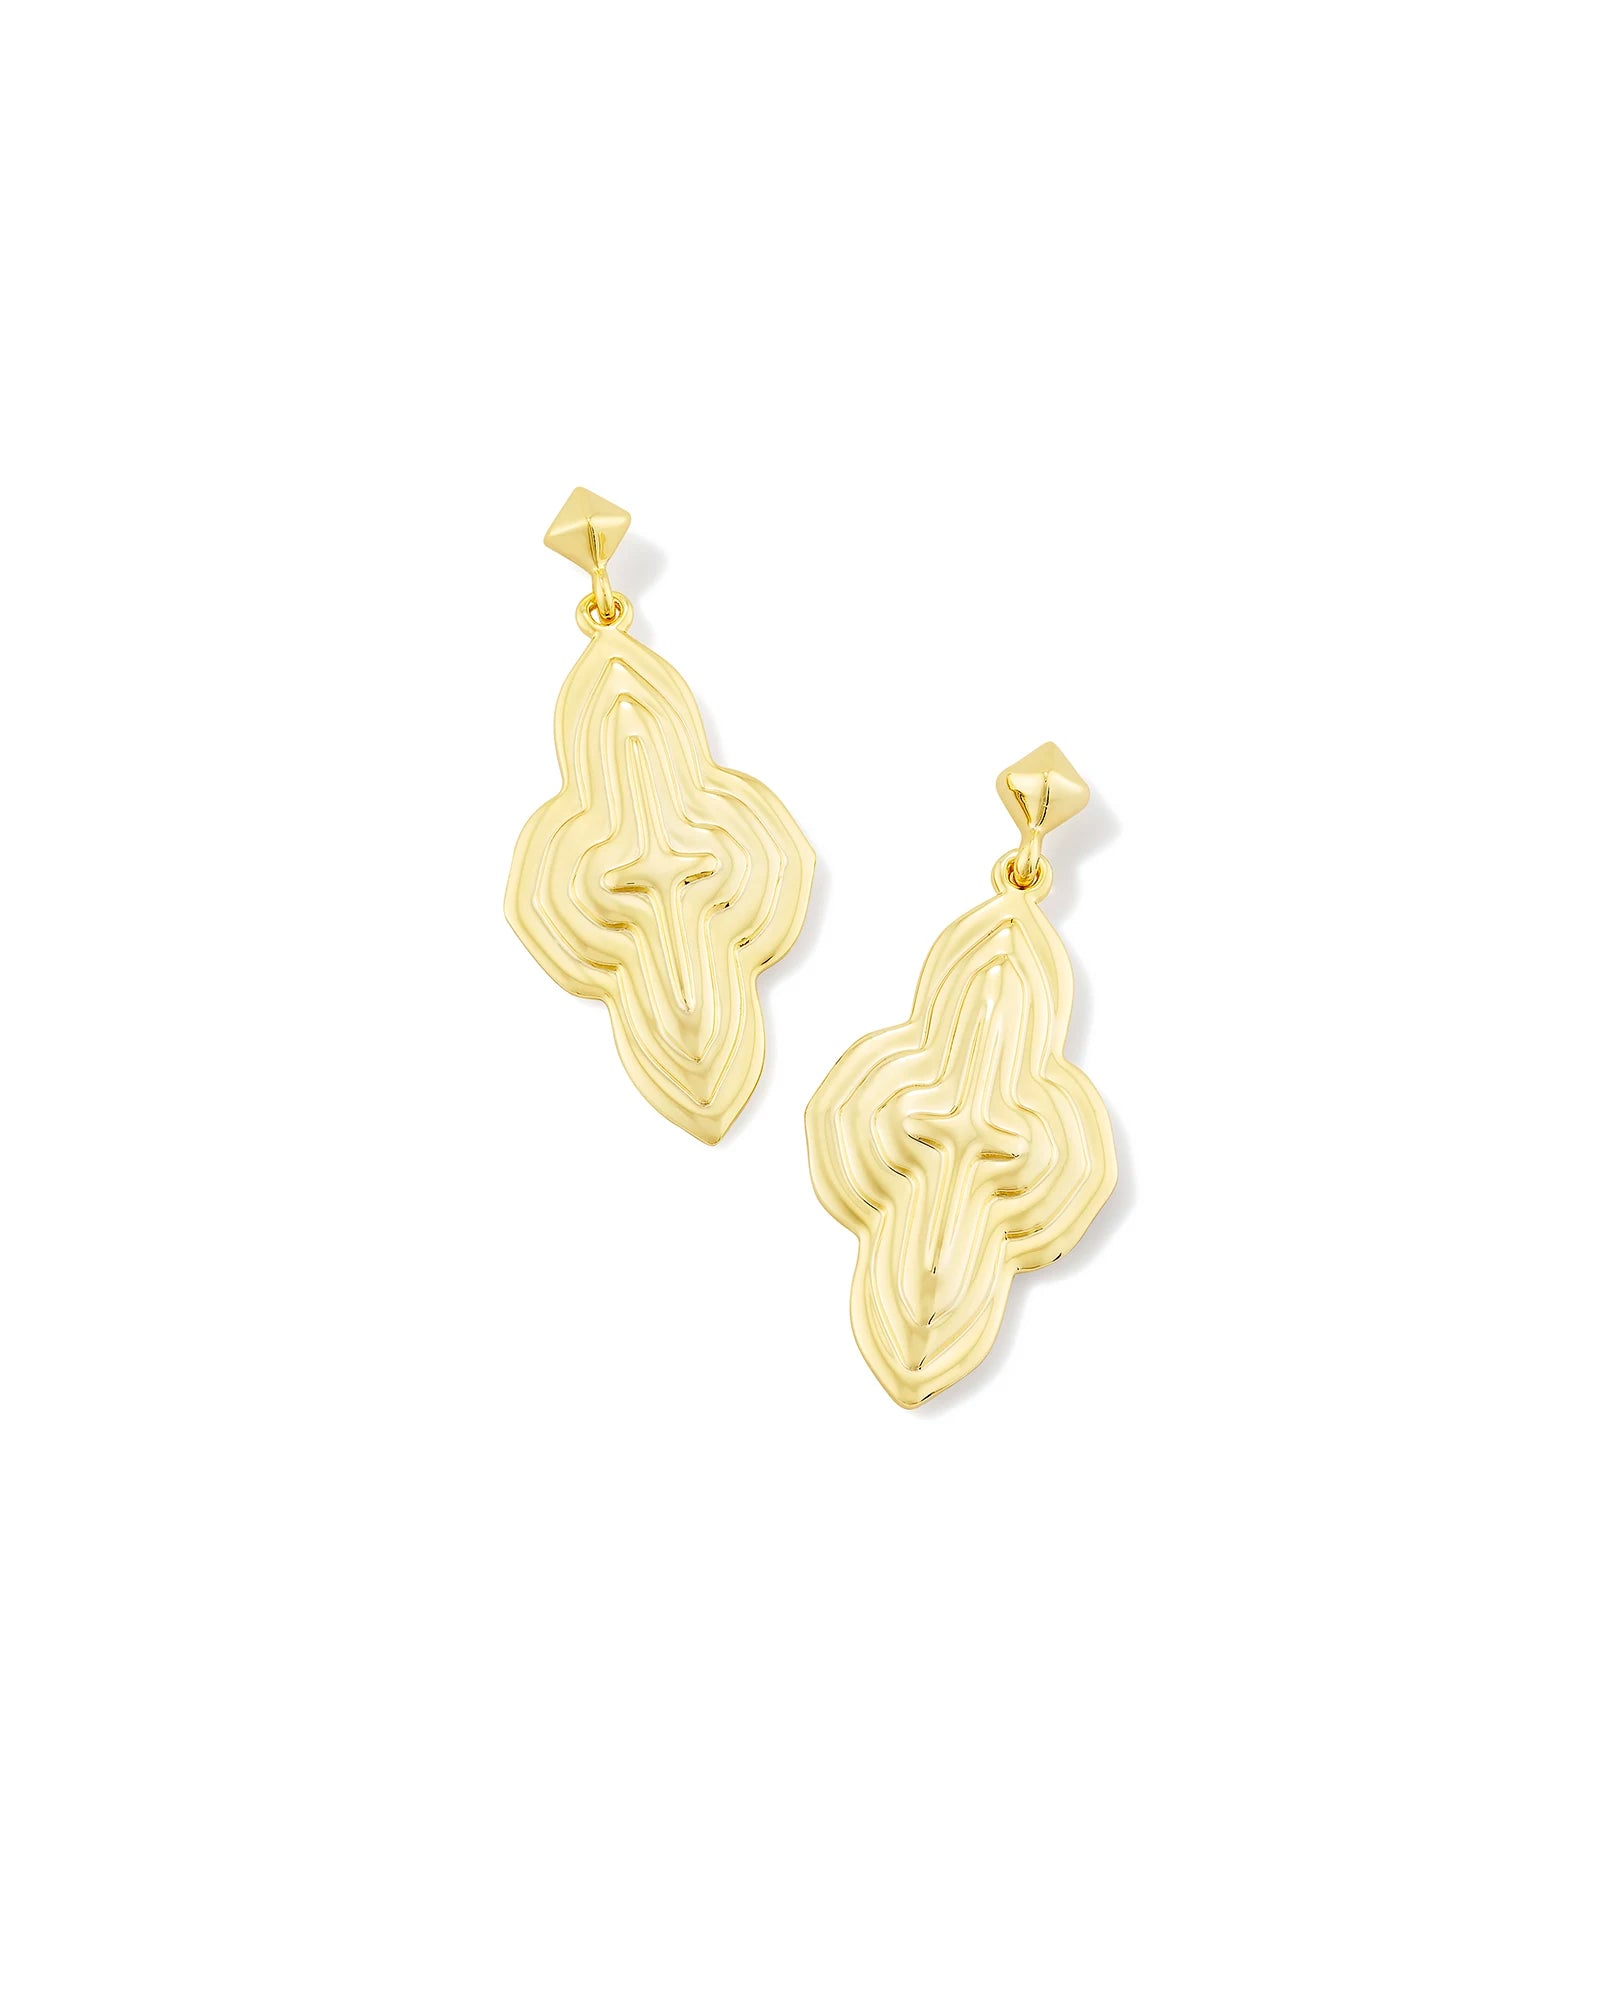 KENDRA SCOTT- Abbie Drop Earrings in Gold Metal